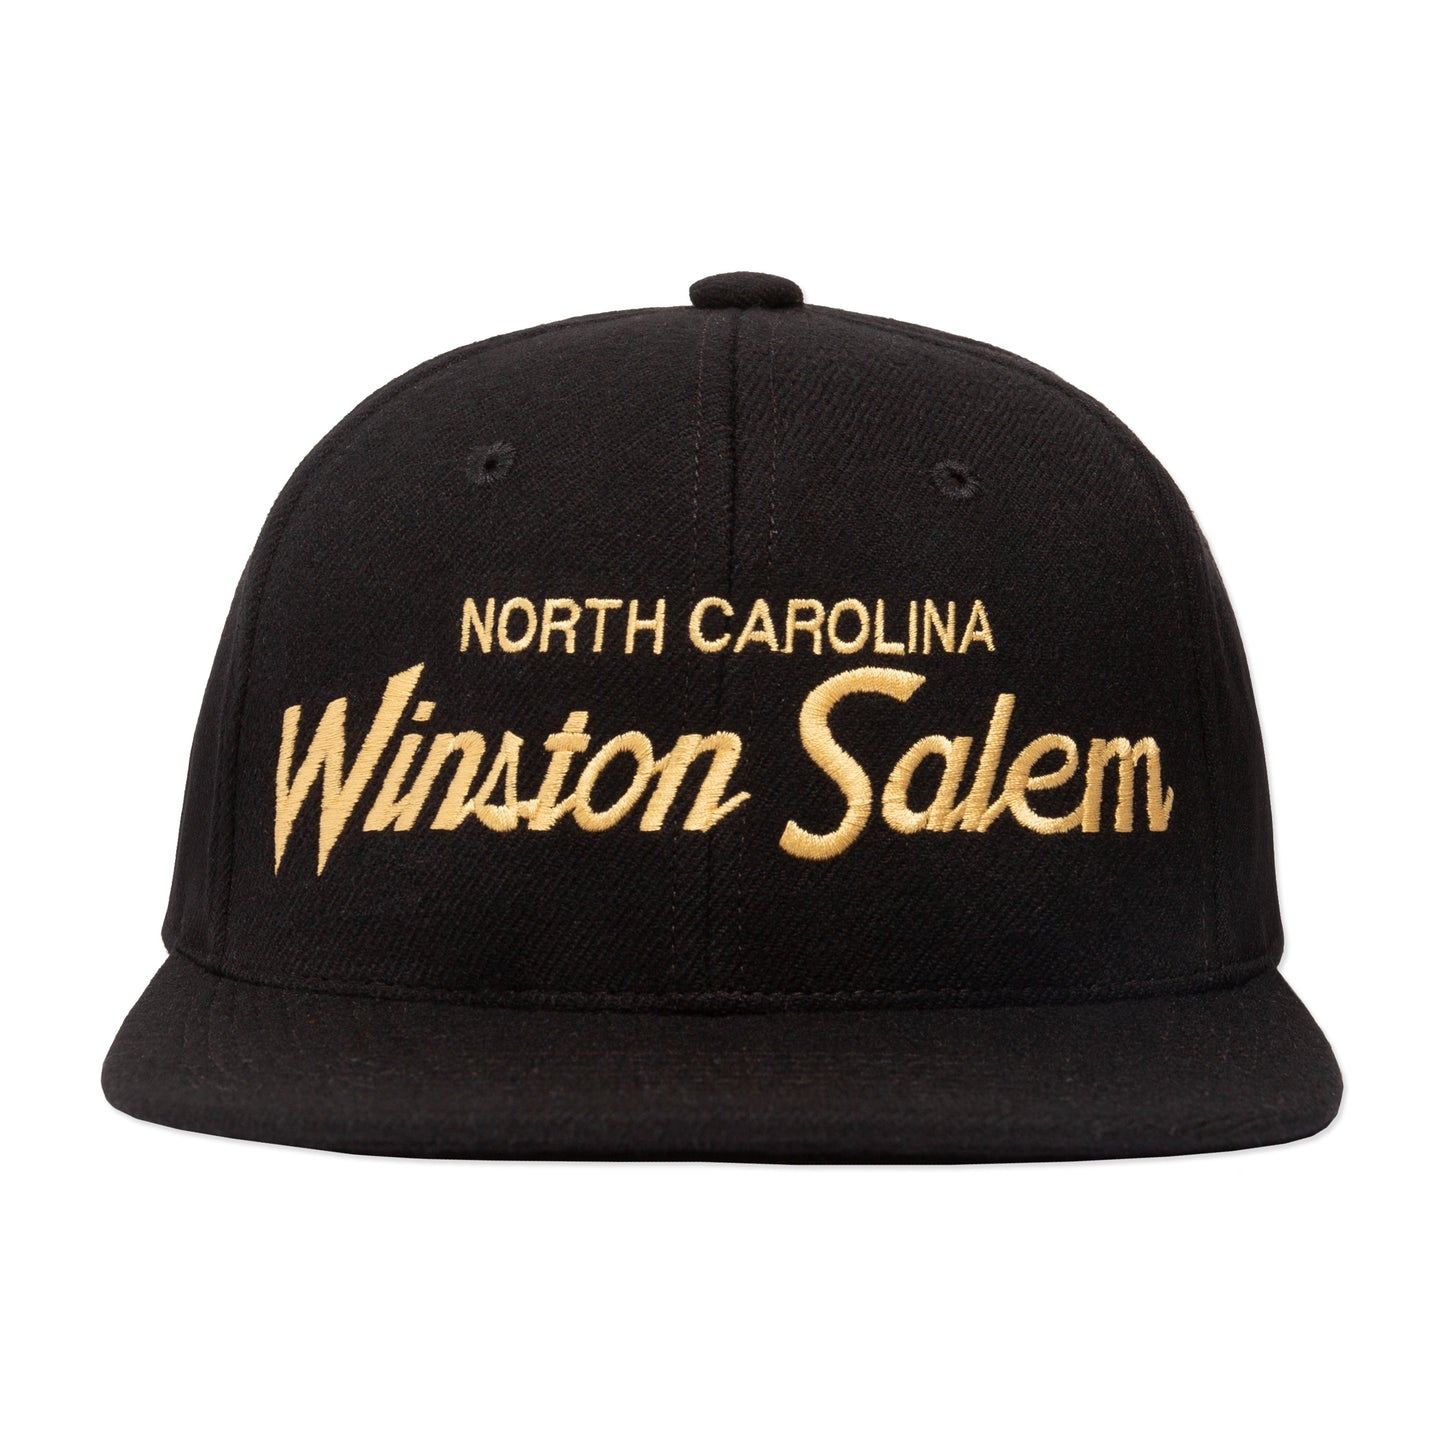 Winston Salem Snapback Hat